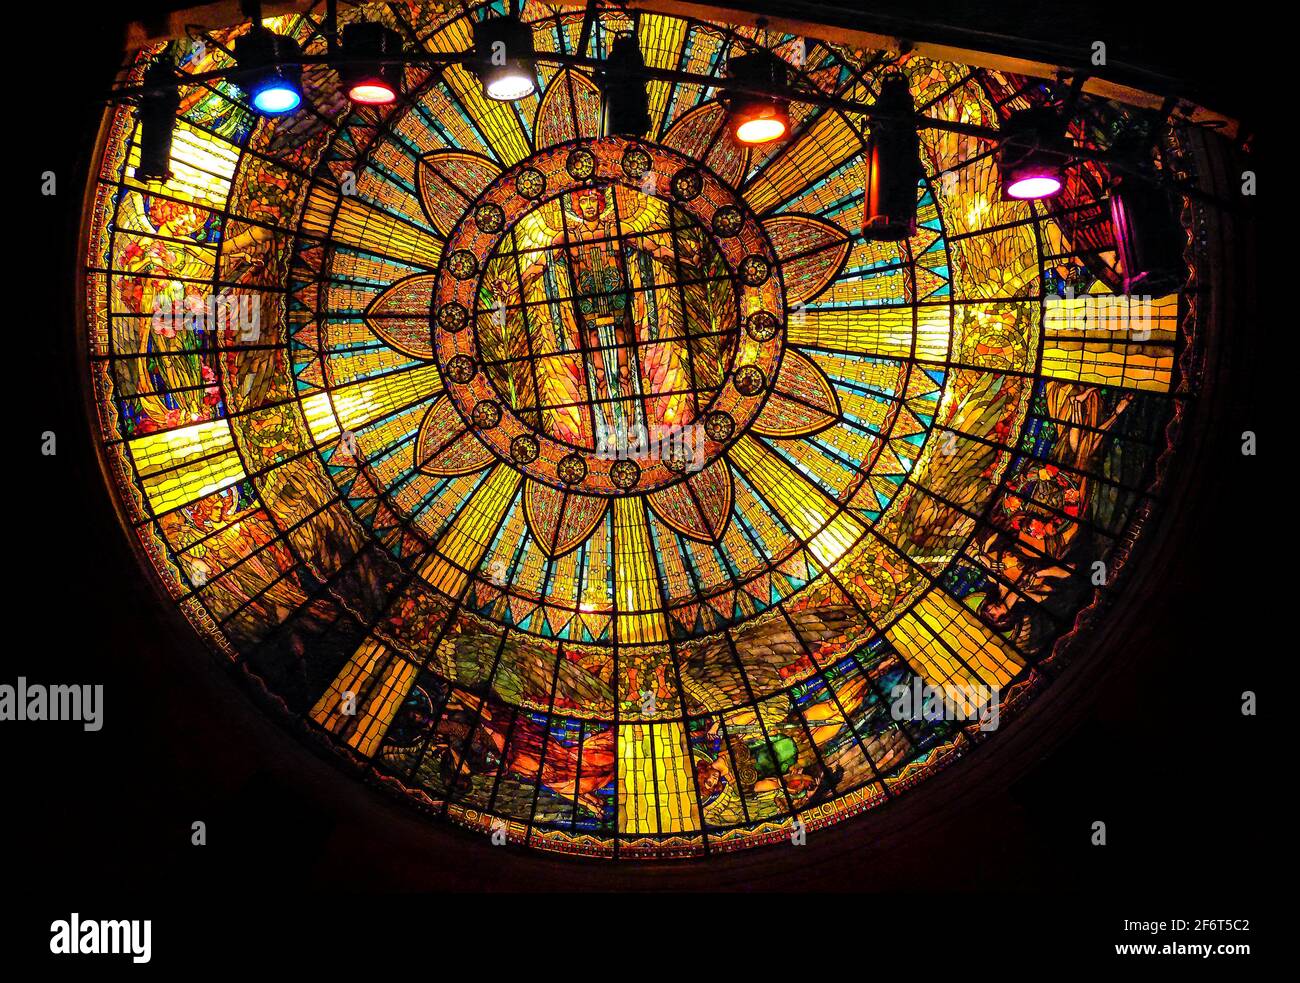 Detail of the Ceiling. Palacio de Bellas Artes. Mexico City. Mexico. Stock Photo